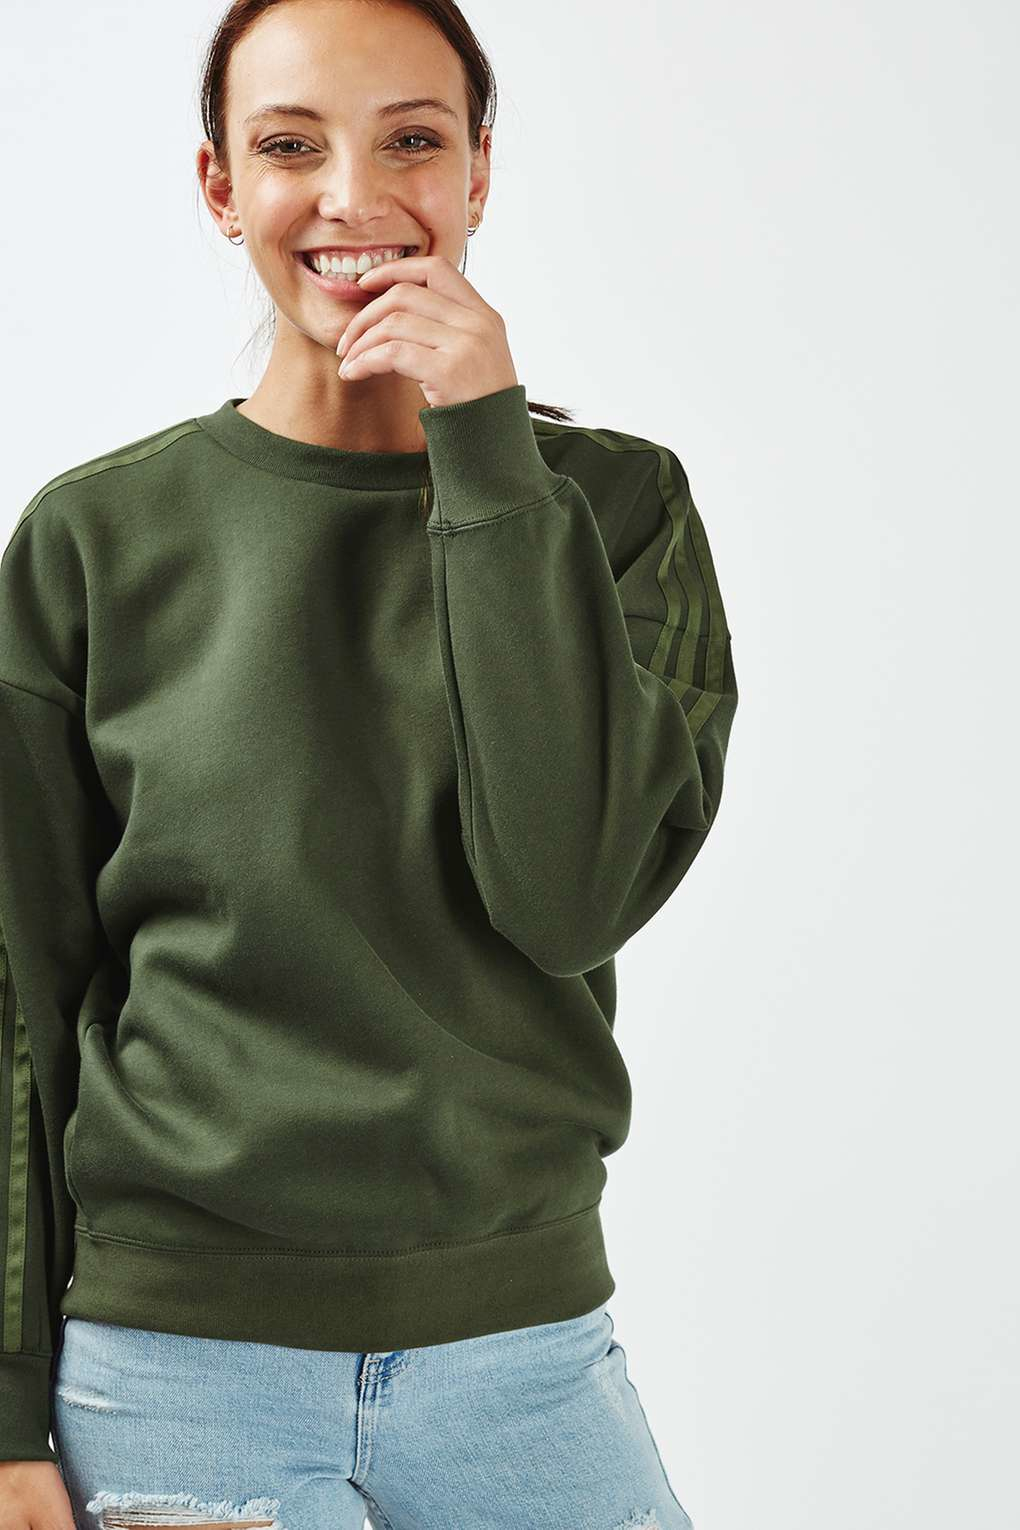 khaki green adidas sweatshirt